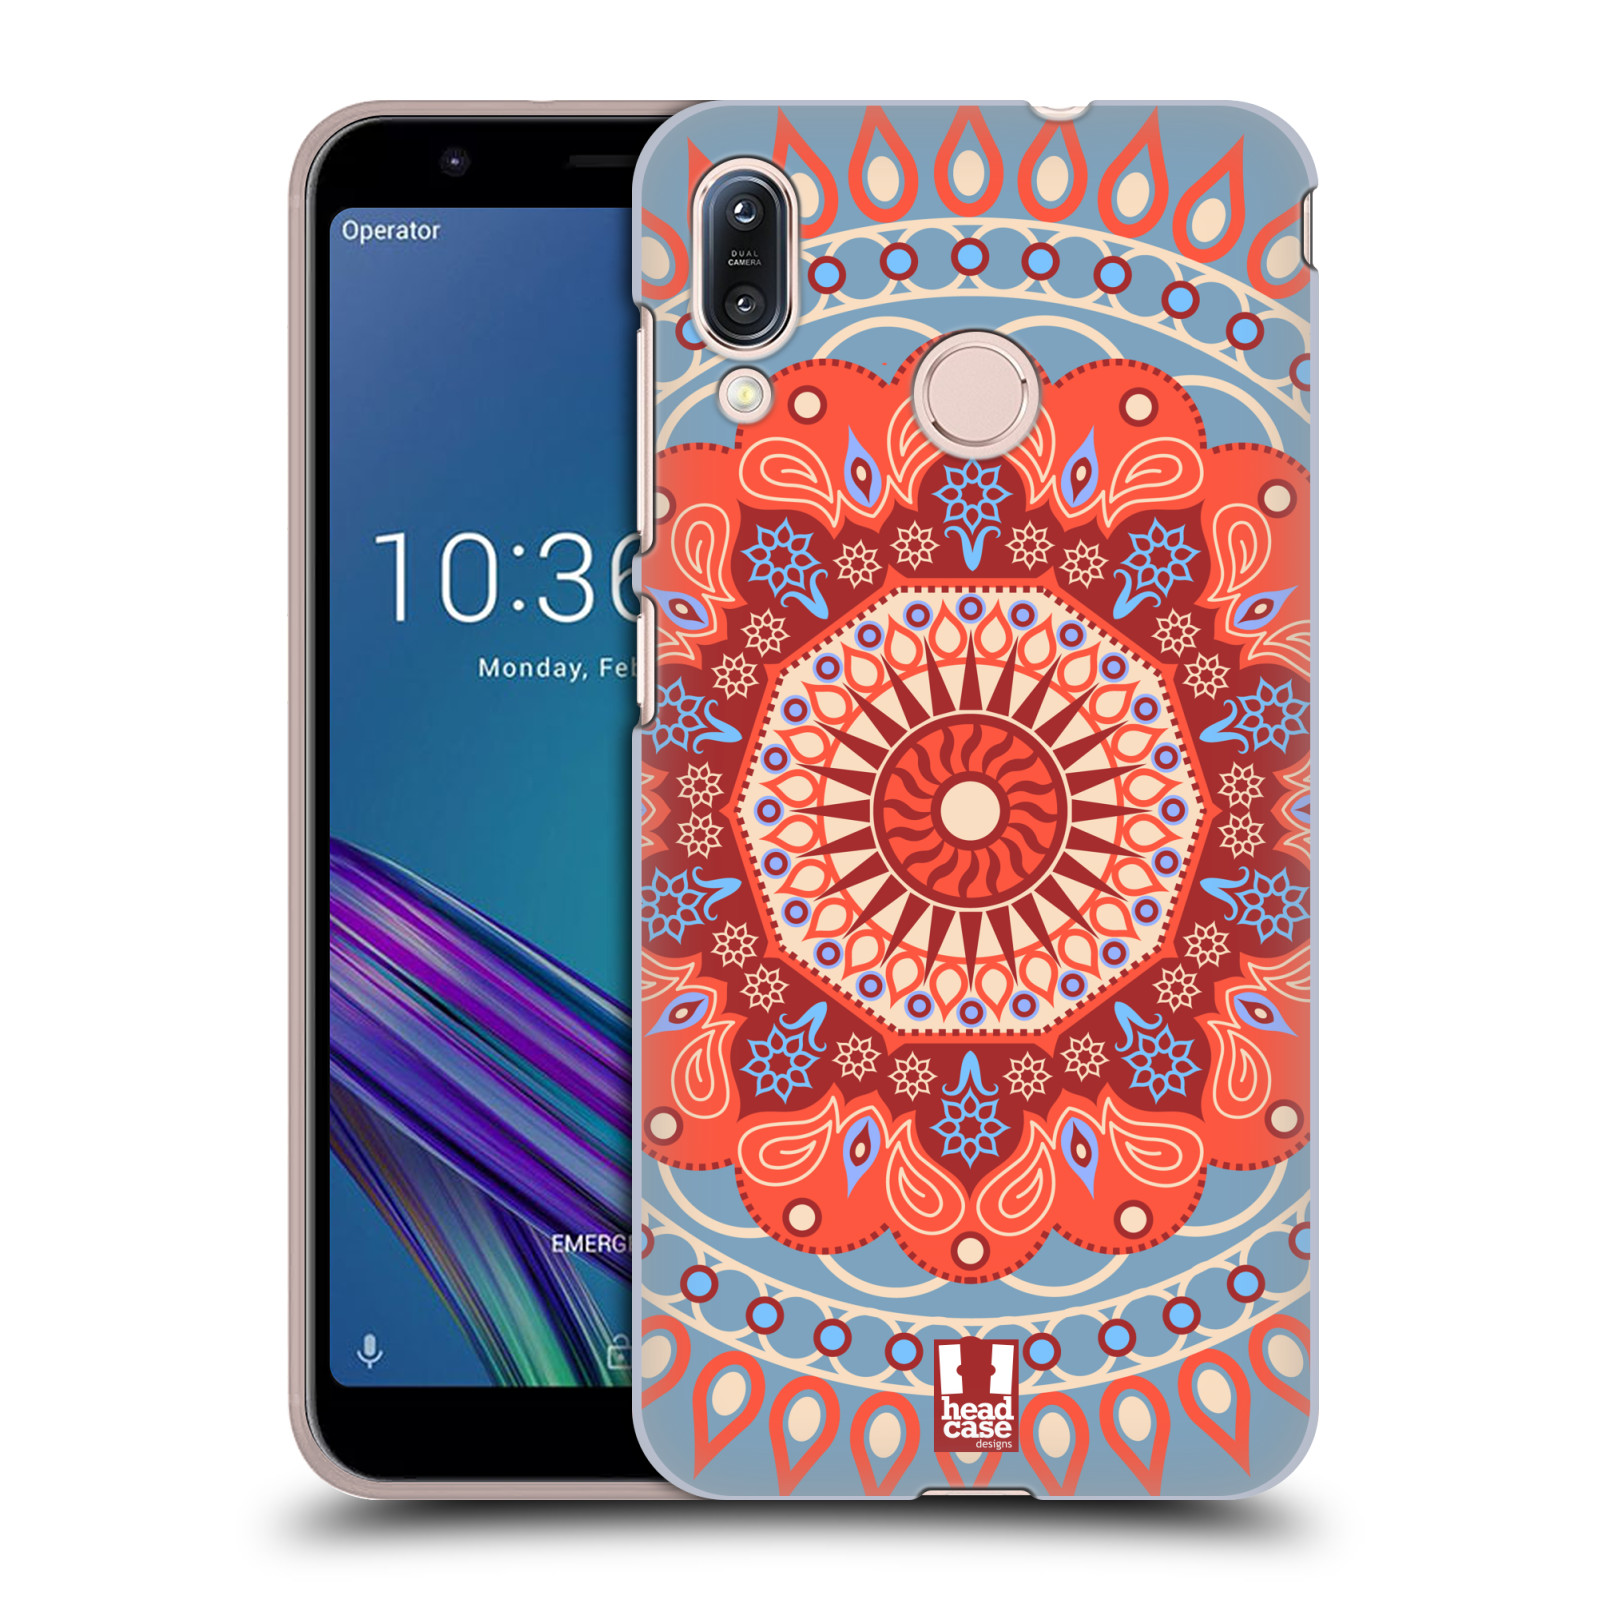 Pouzdro na mobil Asus Zenfone Max M1 (ZB555KL) - HEAD CASE - vzor Indie Mandala slunce barevný motiv ČERVENÁ A MODRÁ